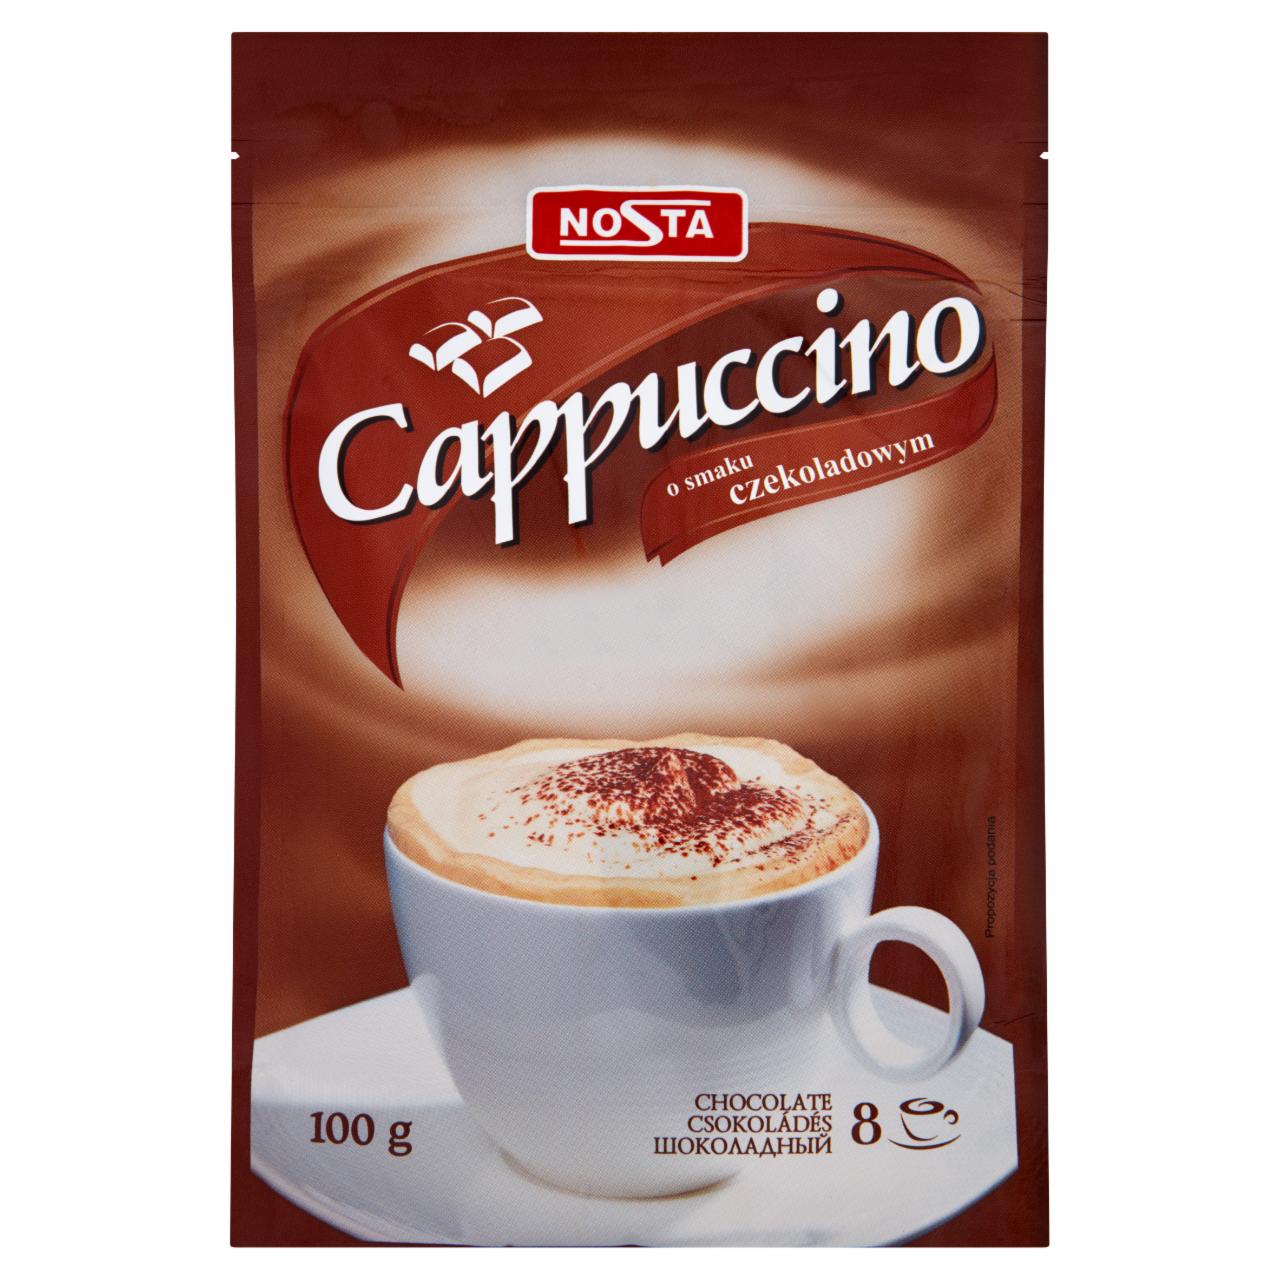 Zdjęcia - Nosta Cappuccino o smaku czekoladowym 100 g